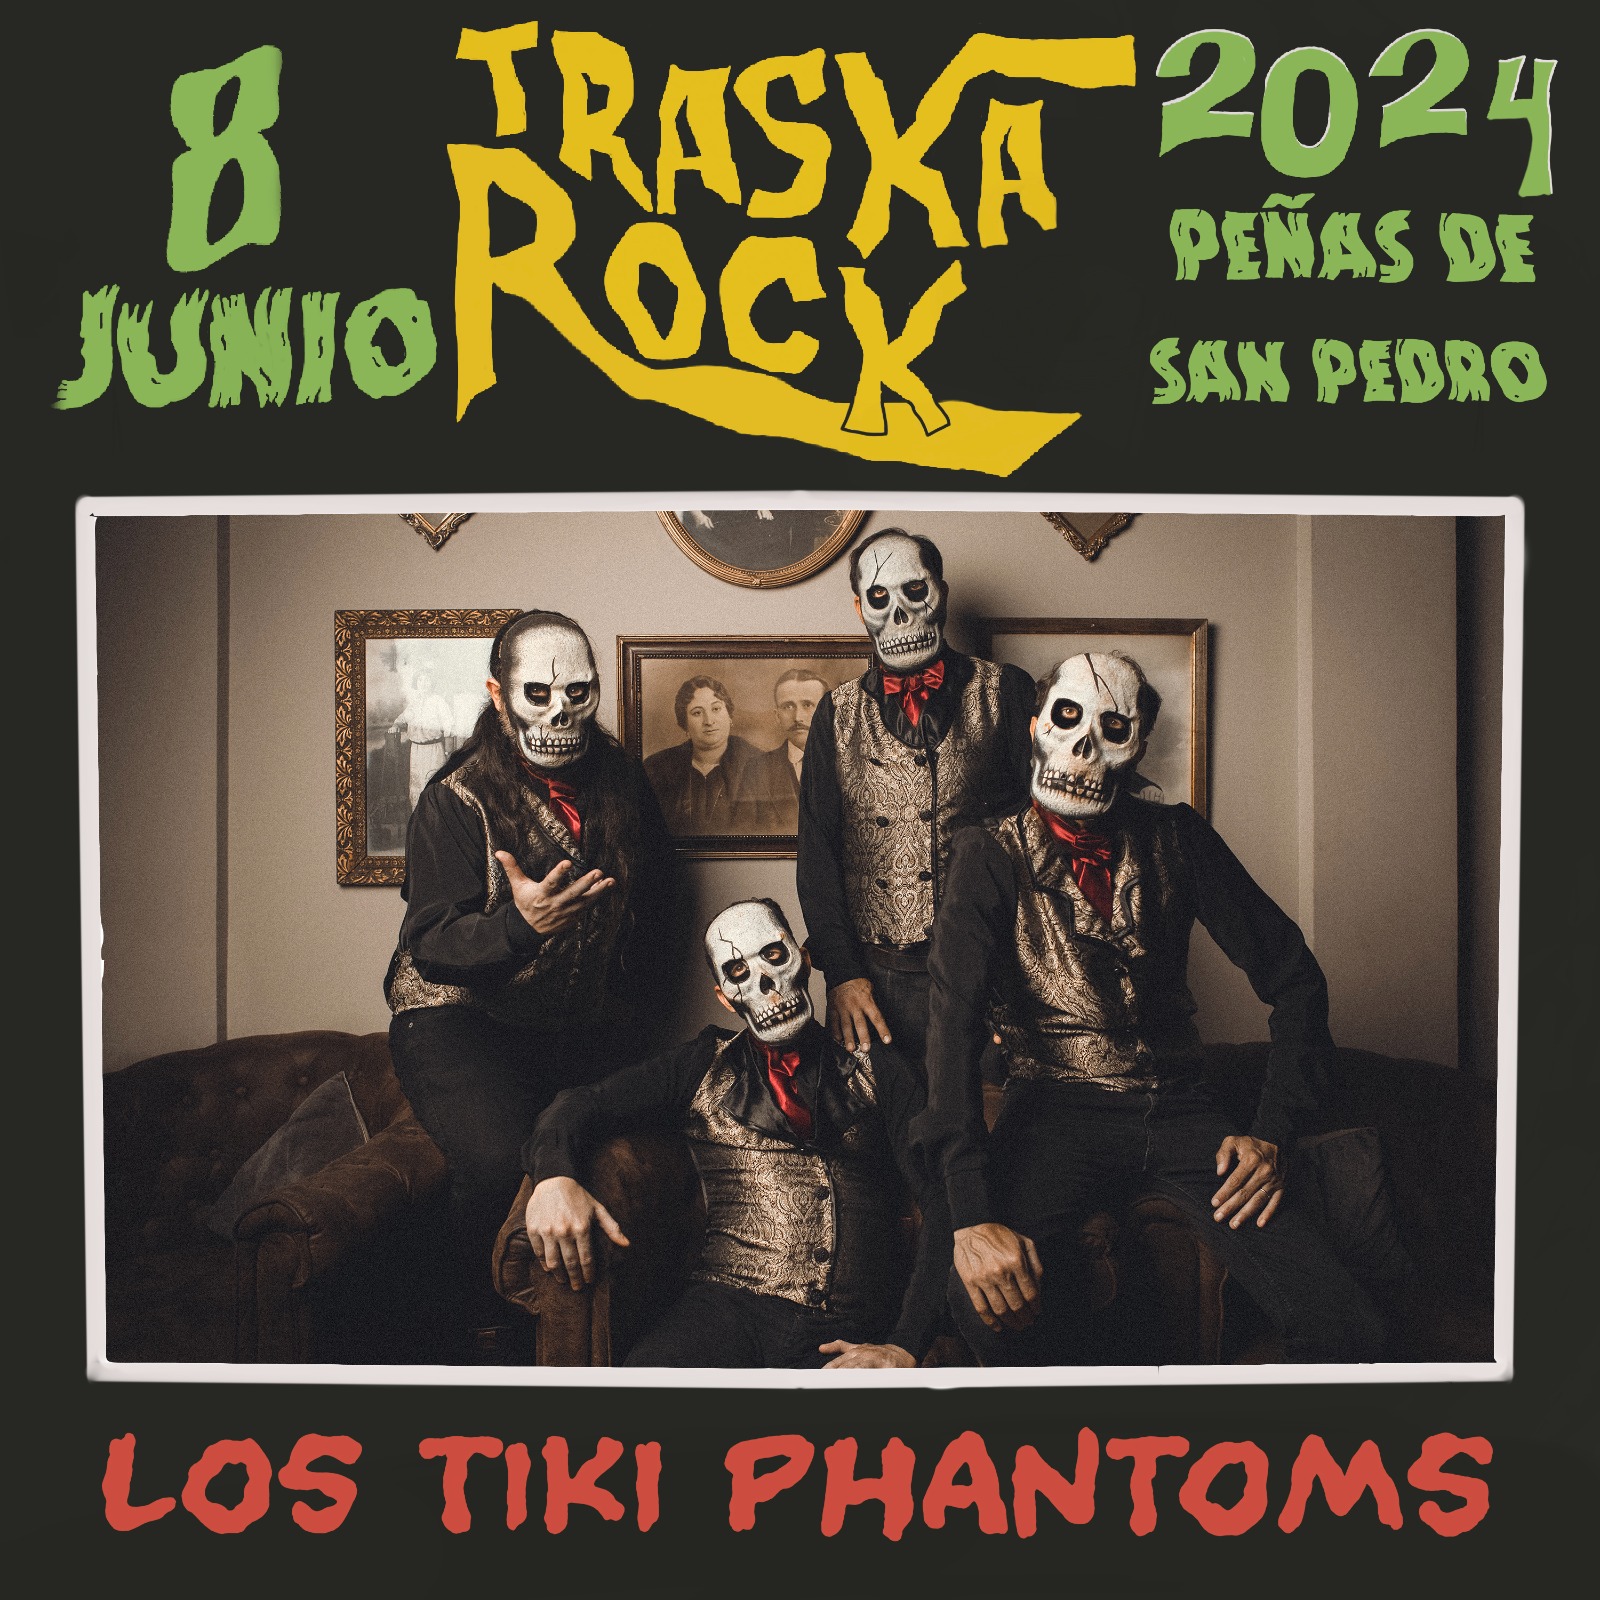 Festival Traska Rock en Las Peñas de San Pedro - Albacete 2024 - Mutick